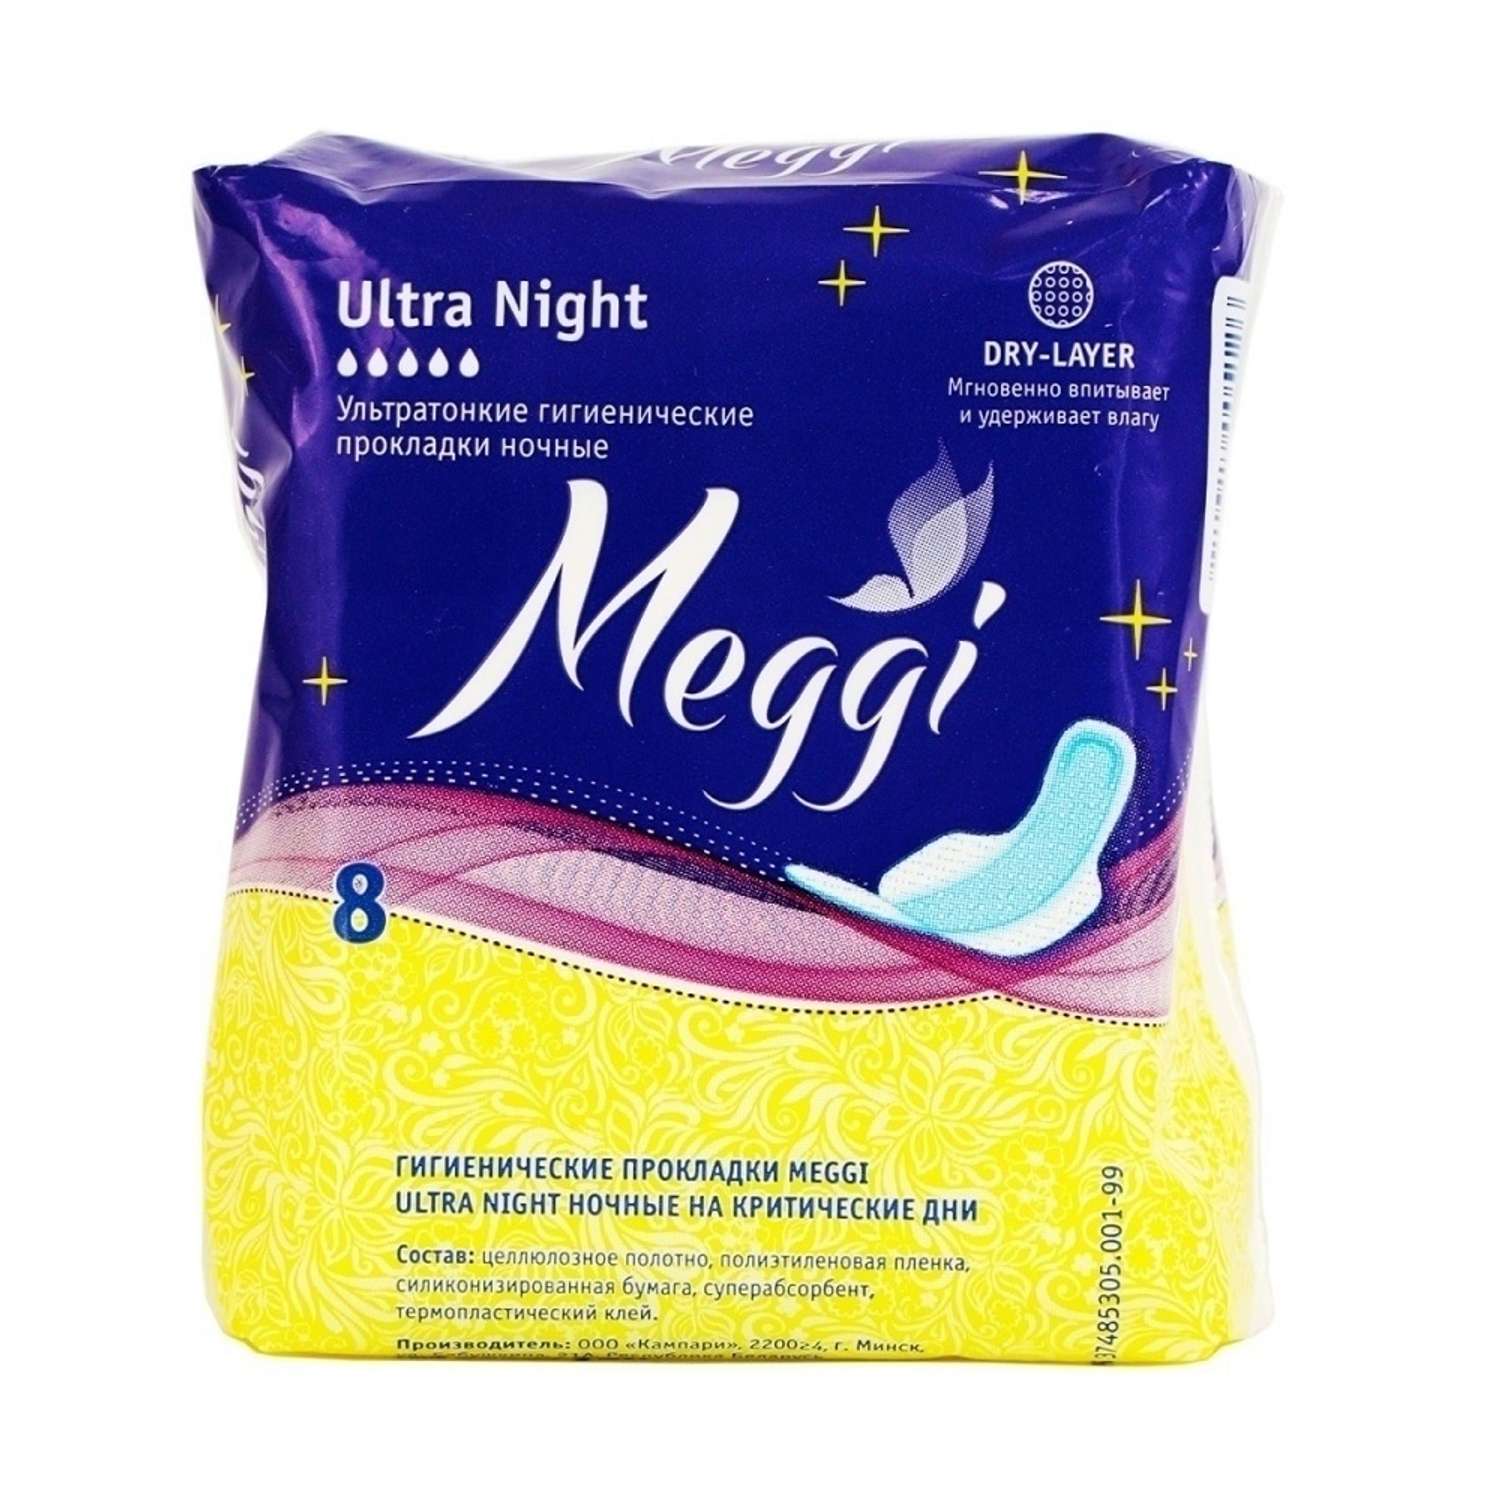 Гигиенические прокладки MEGGI Ultra Night прокладки ночные 8 шт - фото 1